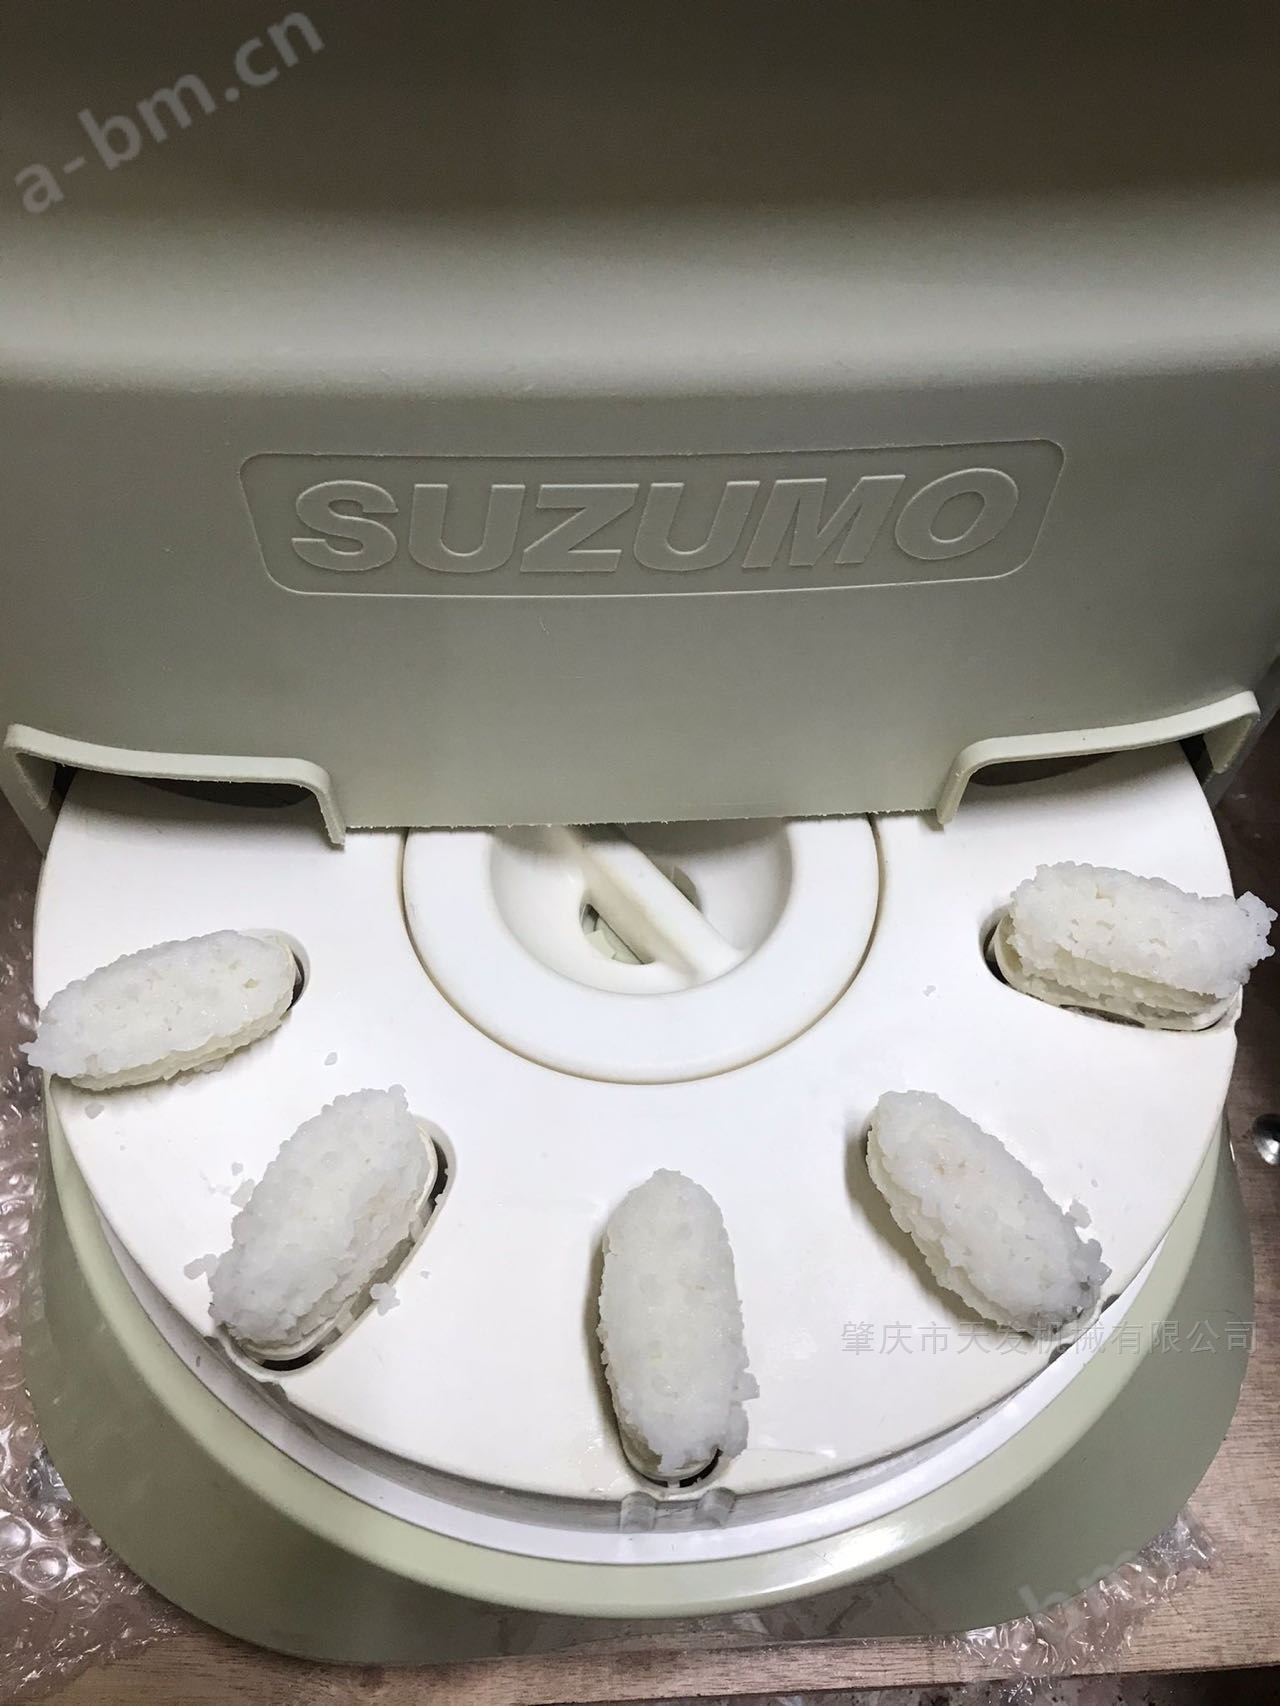 日本SUZUMO寿司饭团机多少钱